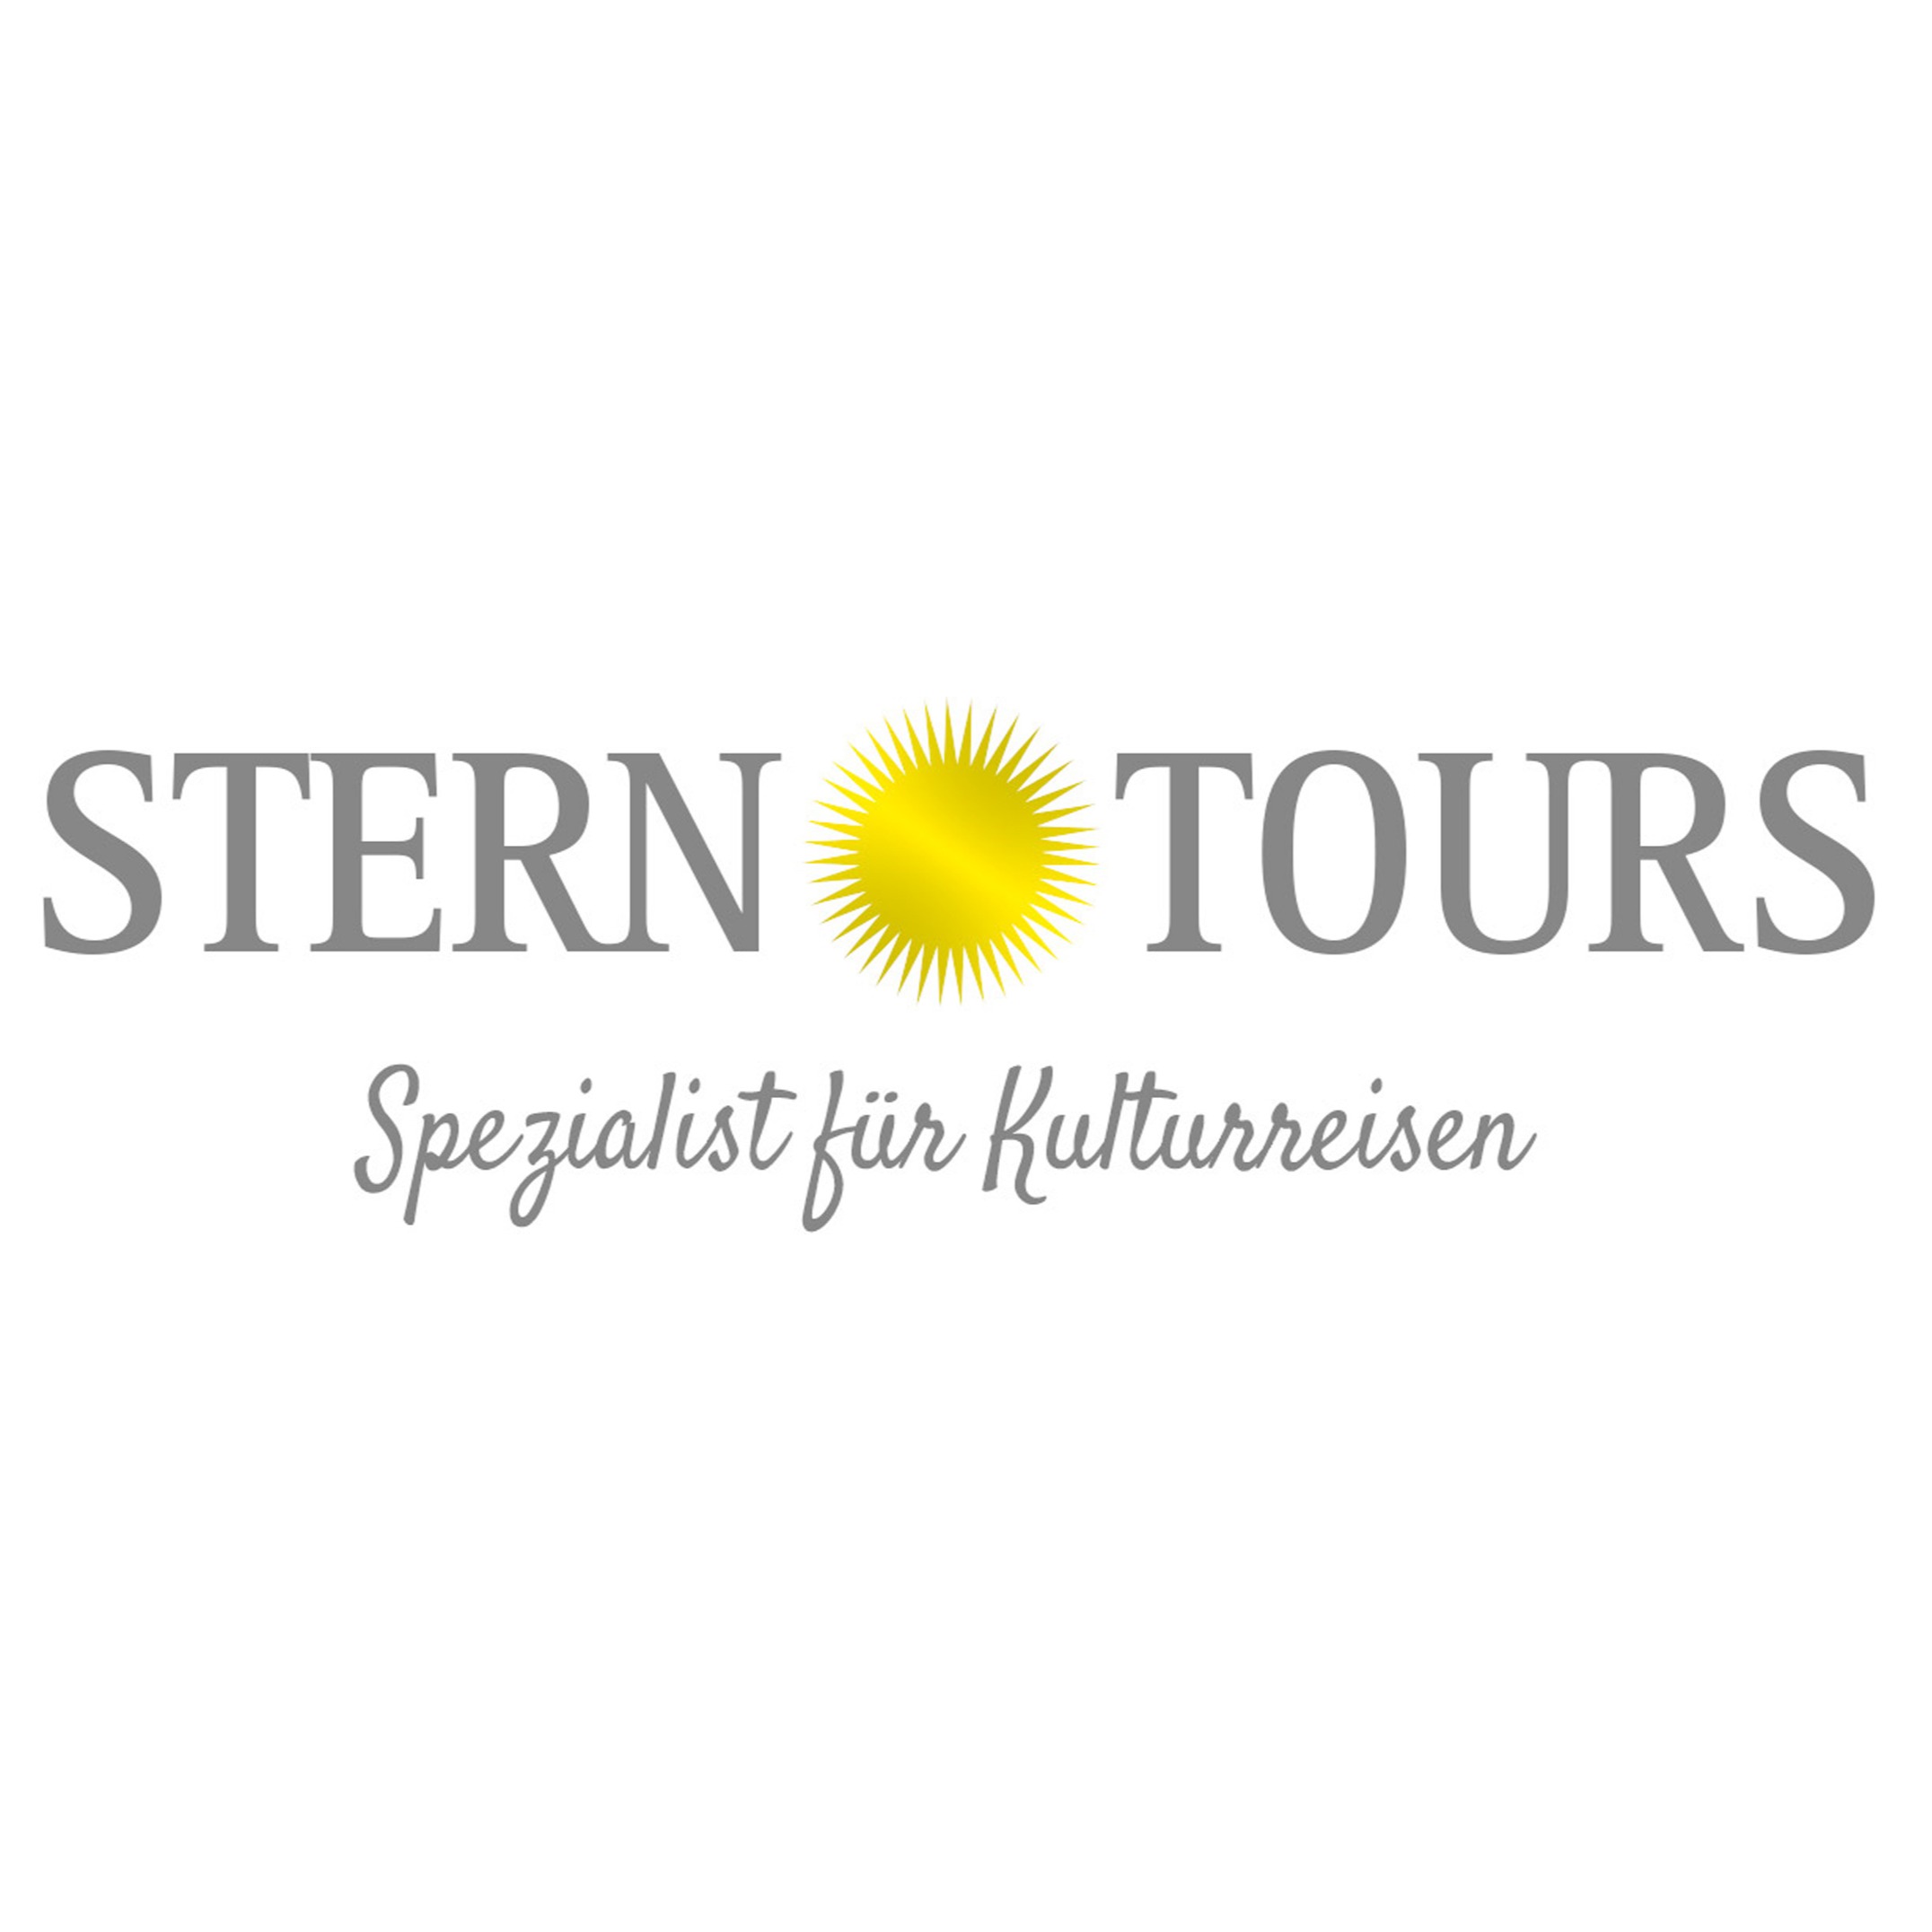 STERN TOURS